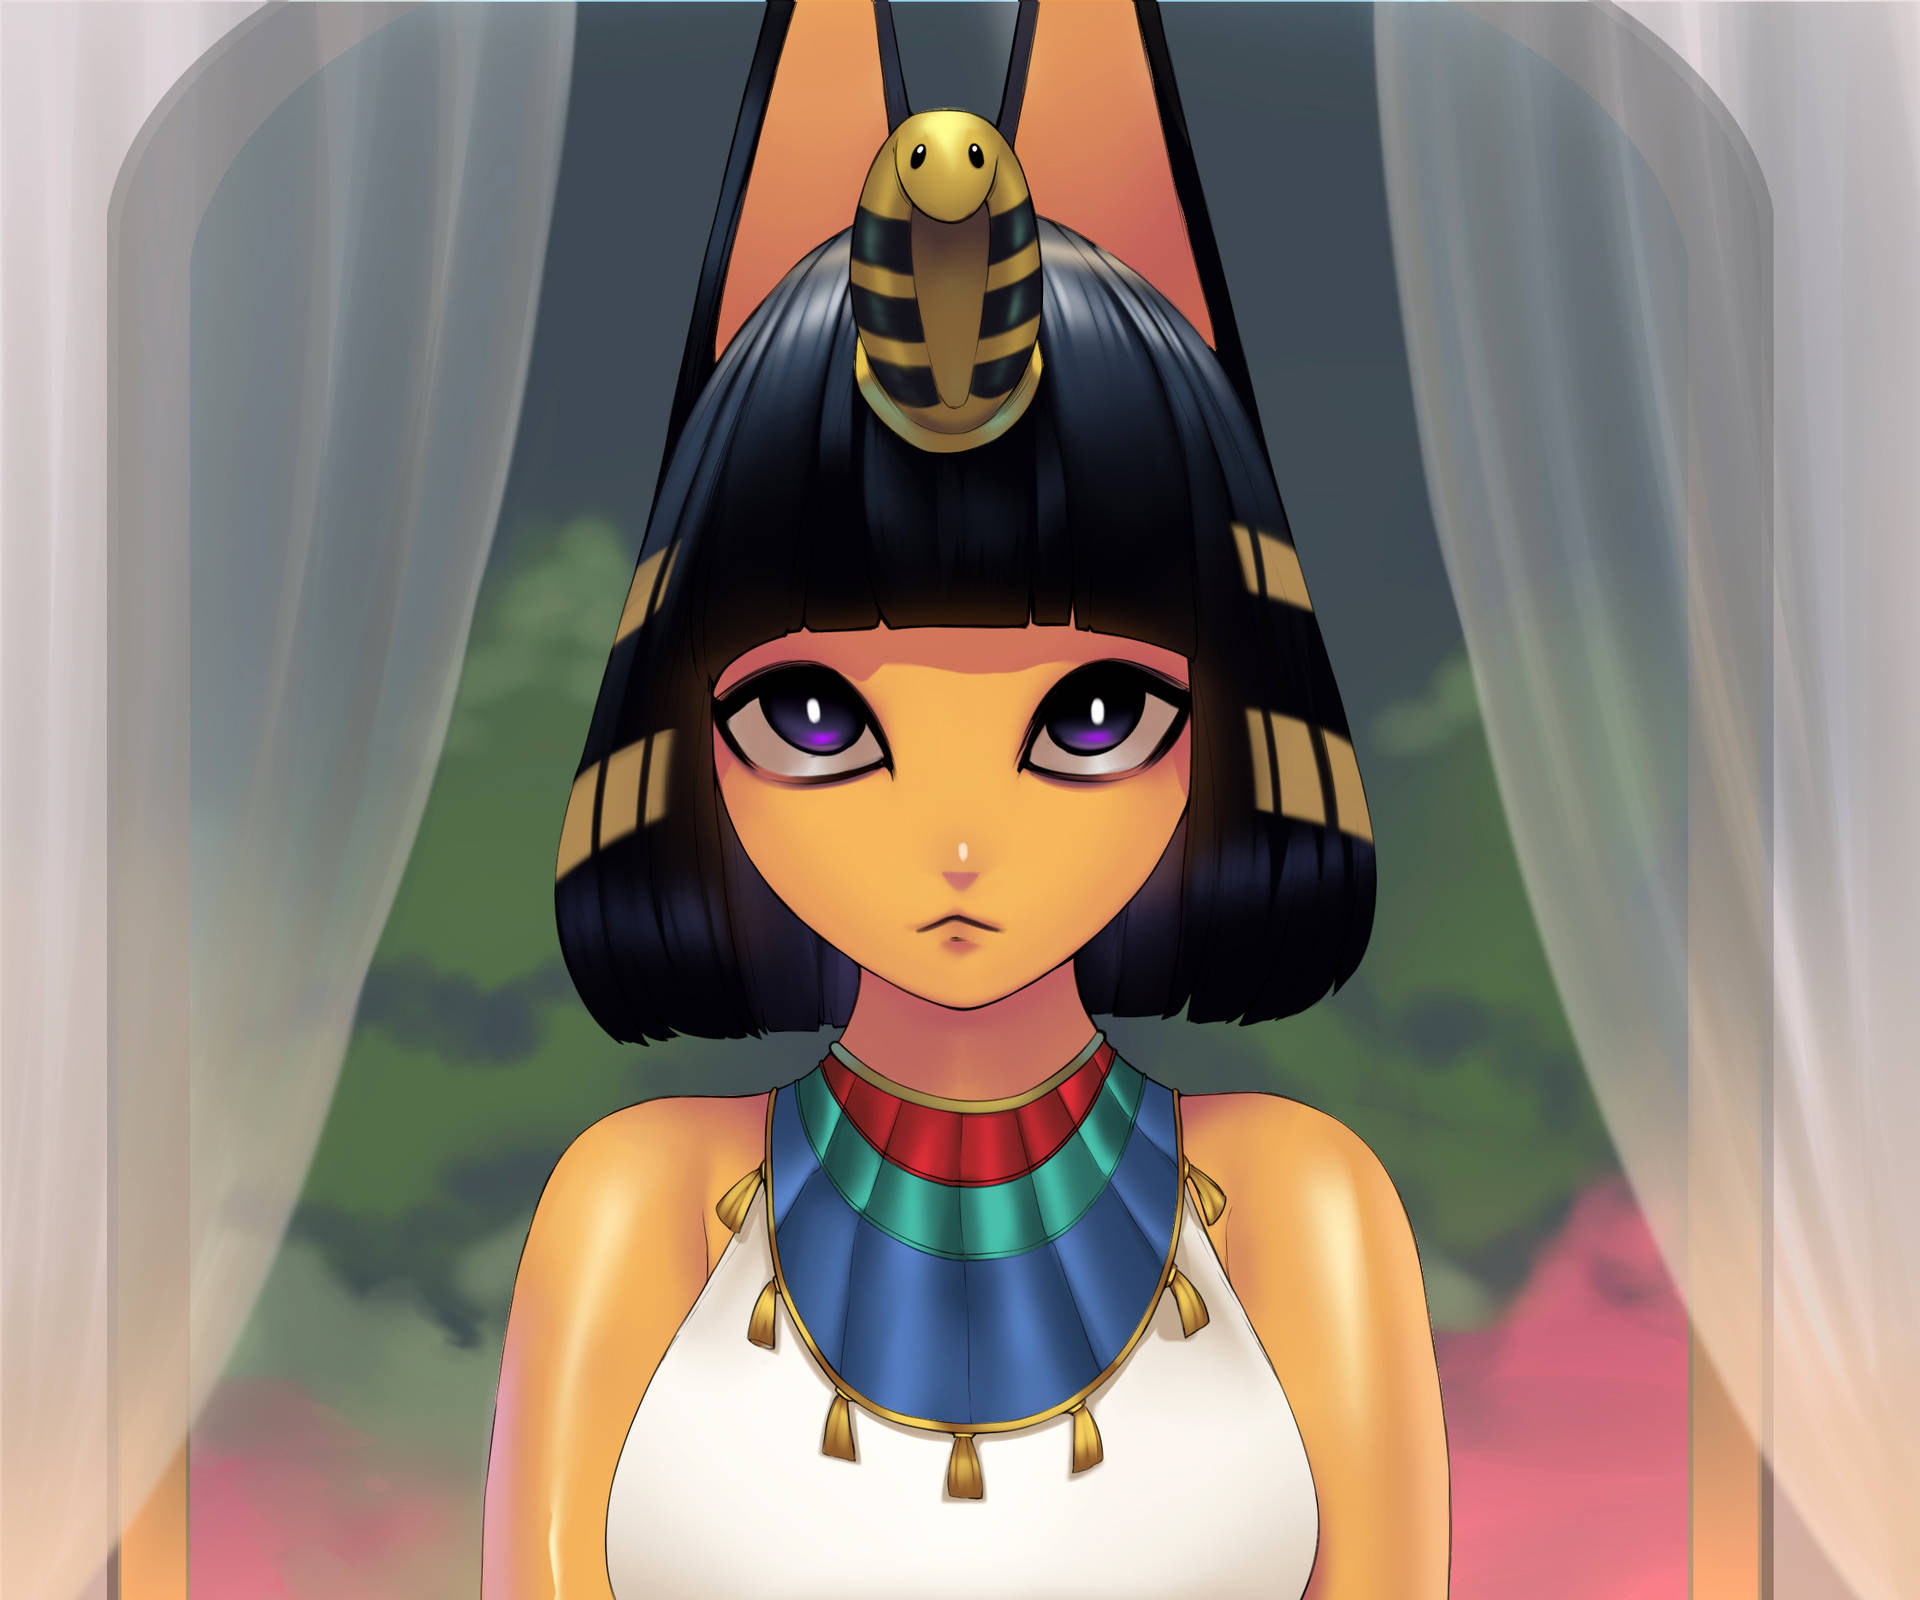 Ankha,den Omtyckta Animal Crossing-karaktären, Omgjord Till En Ädel Egyptisk Drottning. Wallpaper